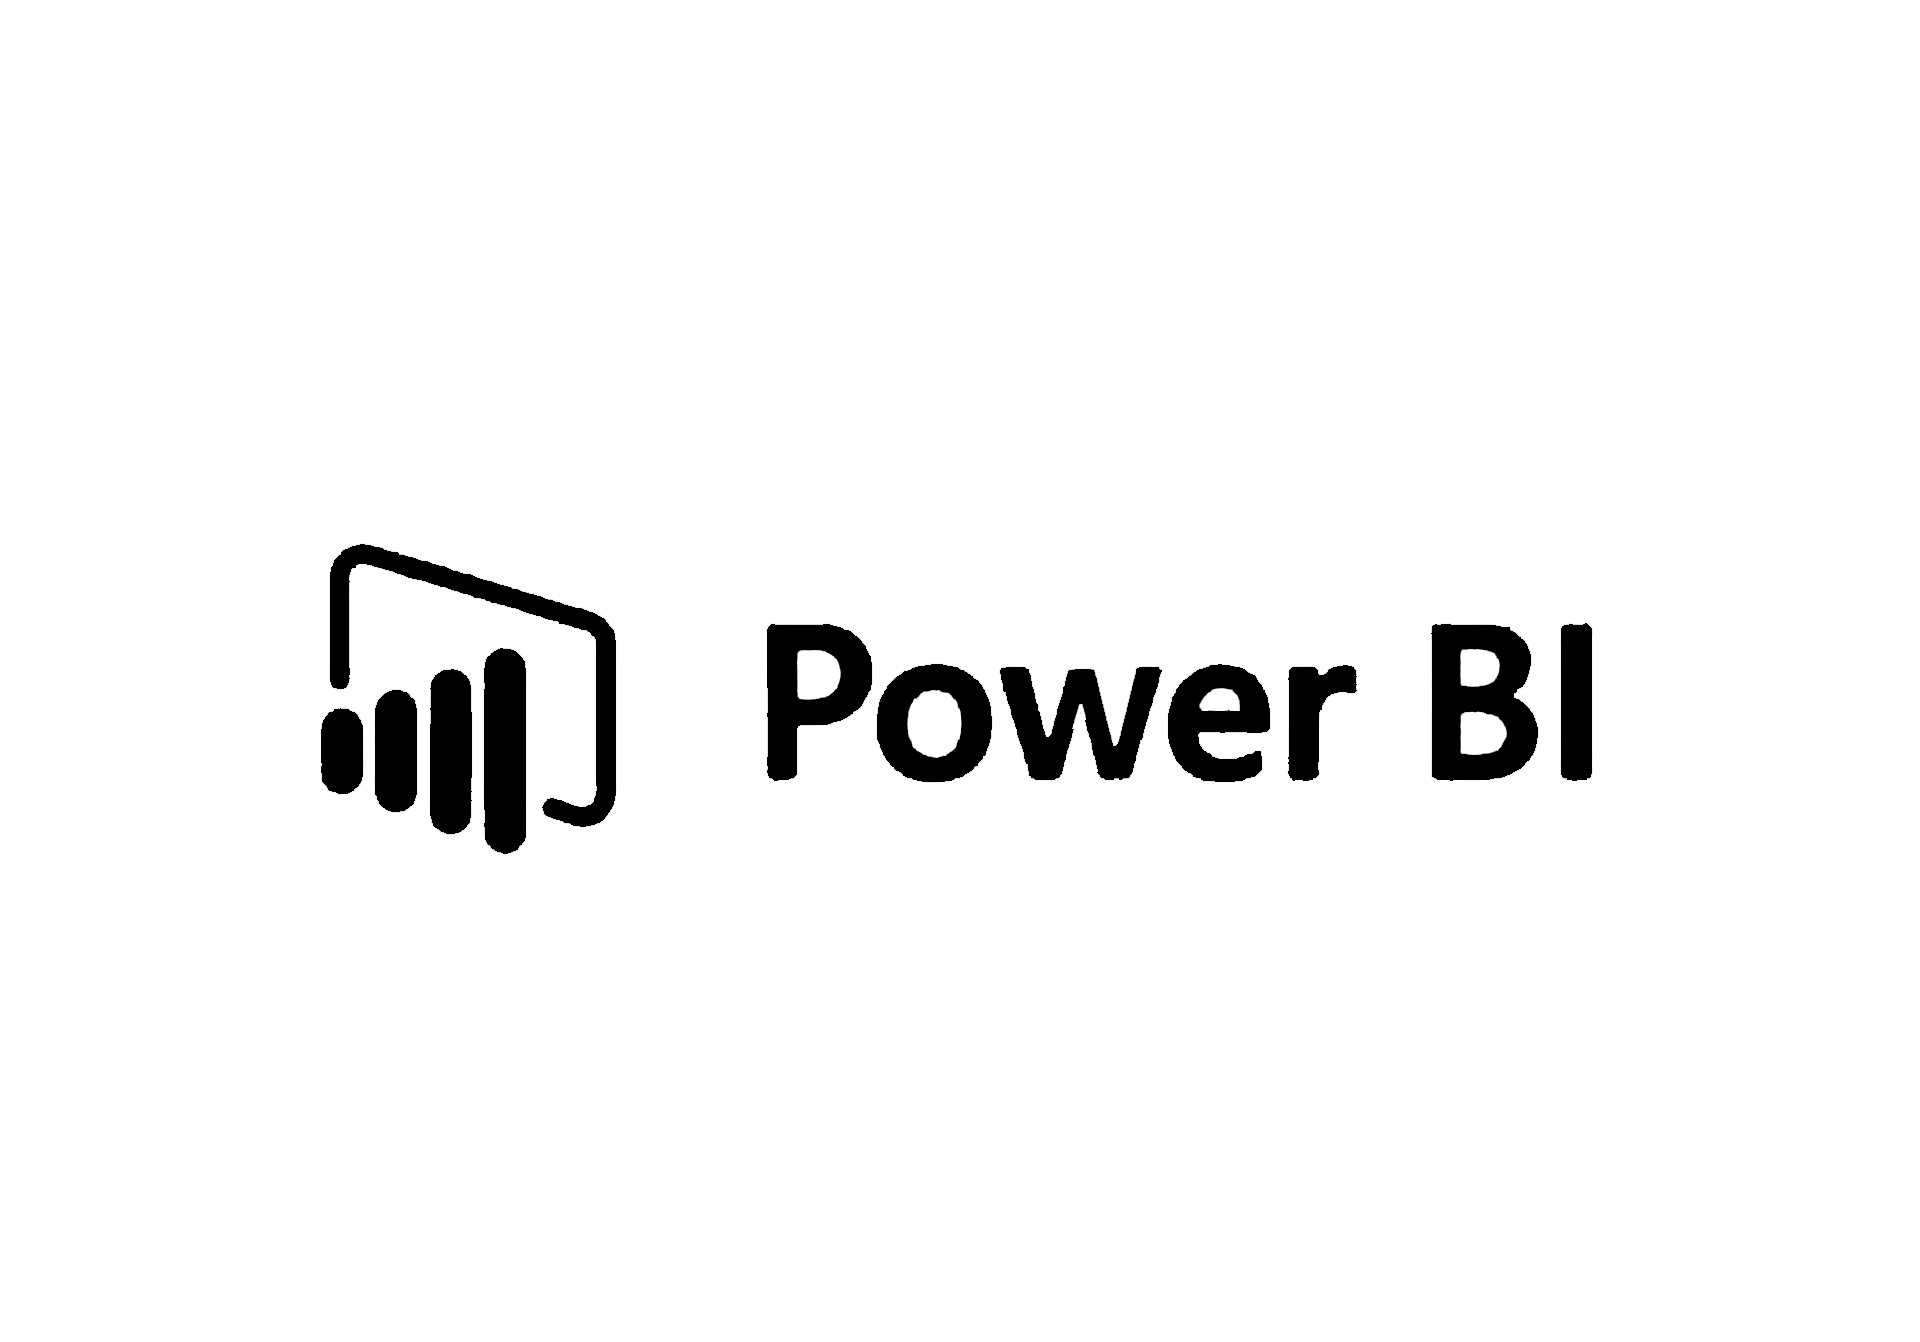 Azure Power BI